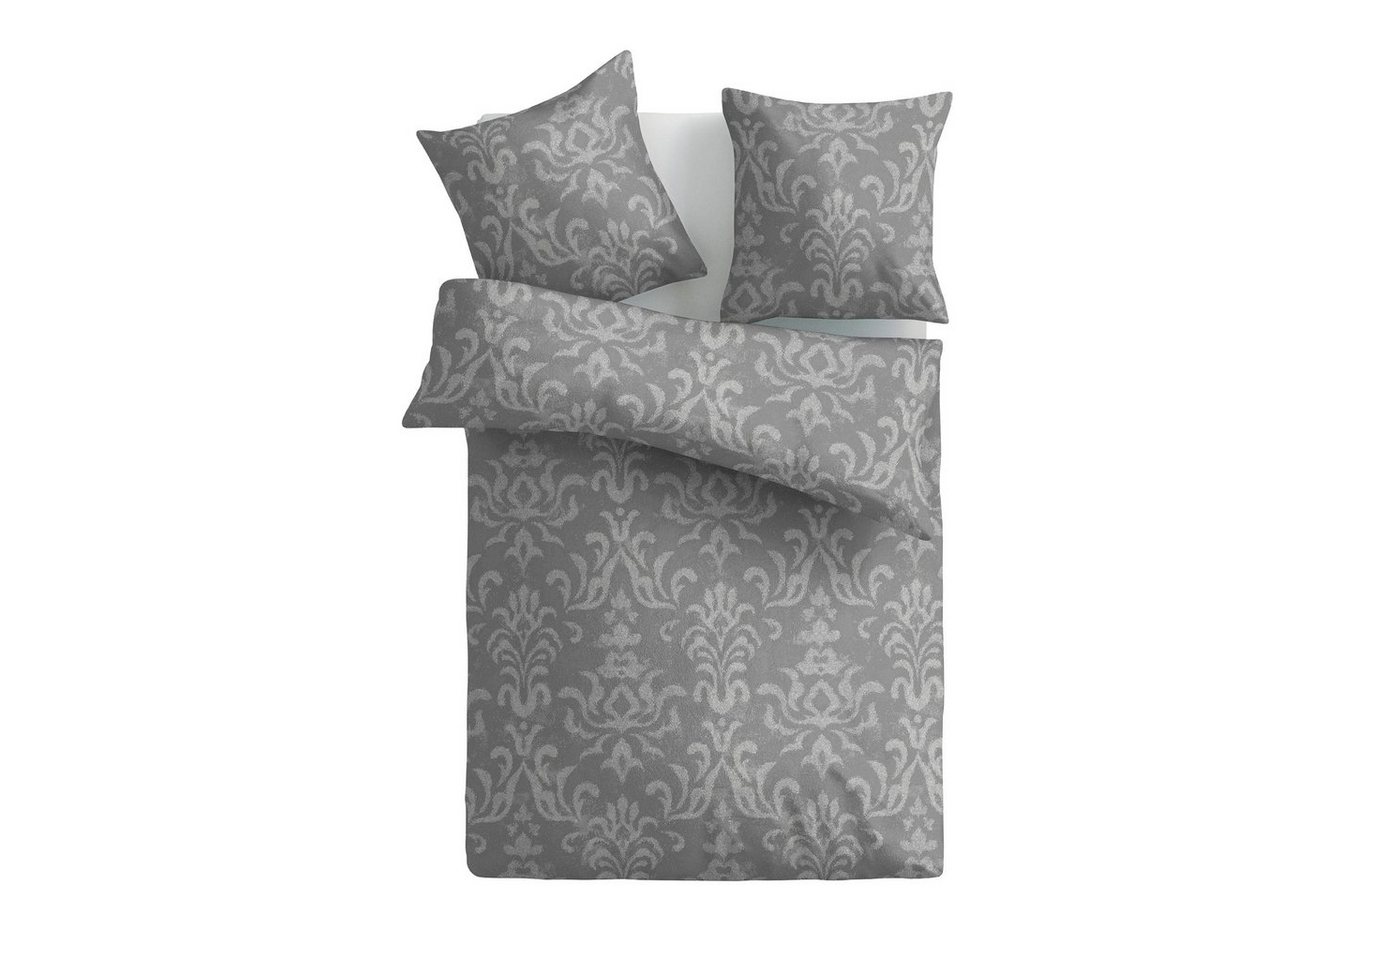 Bettwäsche 2tlg. Bettbezug + Kissenbezug - Floral / Ornament, Bestlivings, Satin Baumwolle, 100% Baumwolle, verd. Reißverschluss, Satin Qualität - Bettdeckenbezug von Bestlivings